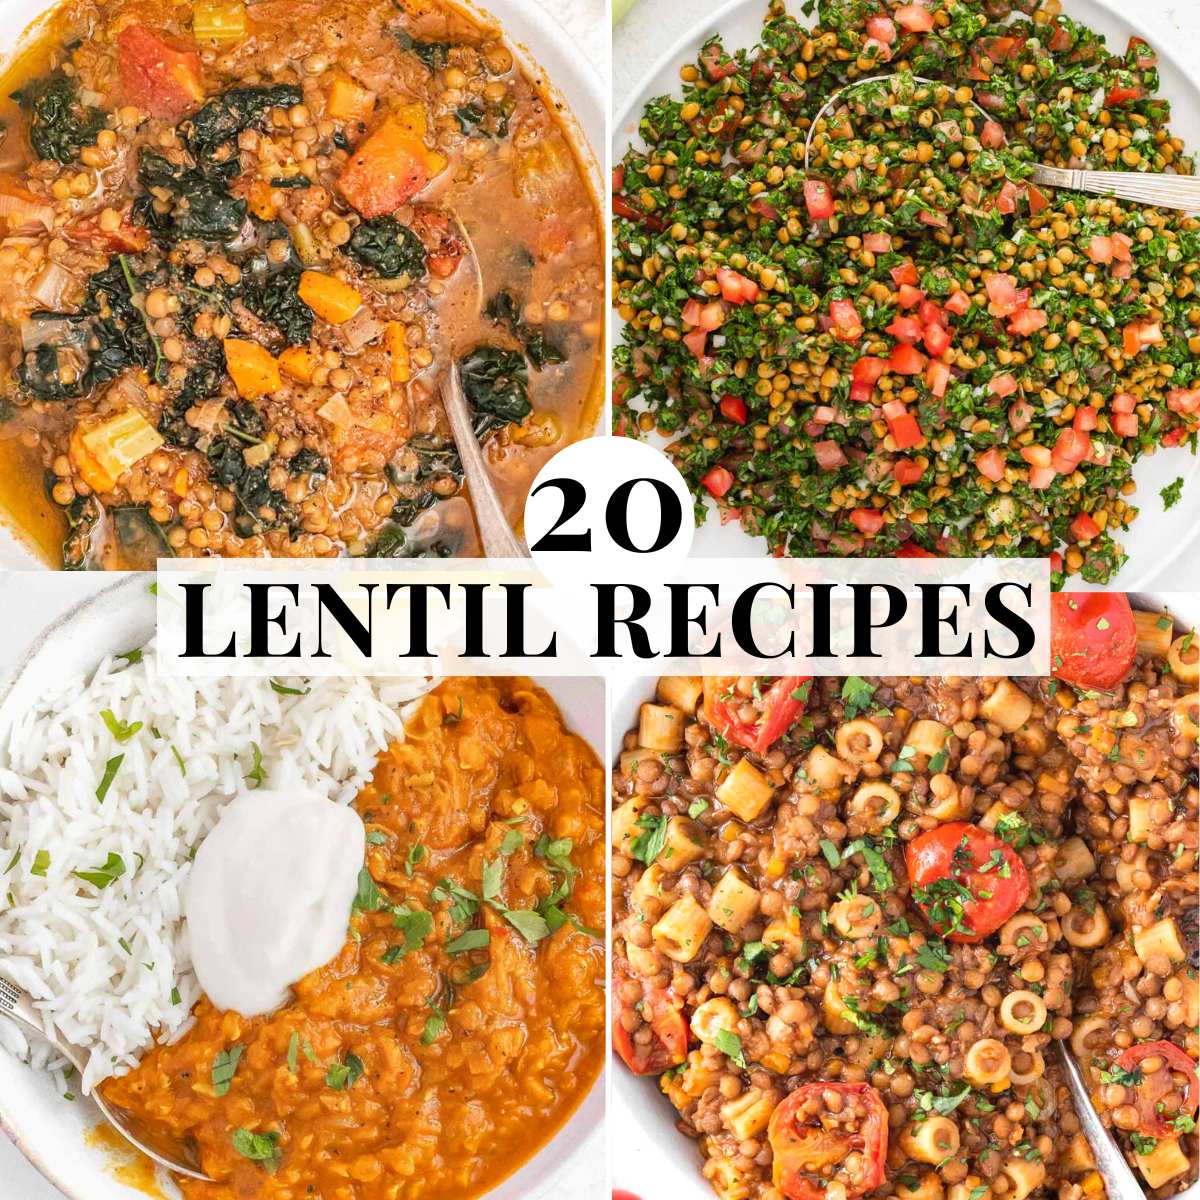 Healthy Lentil recipes